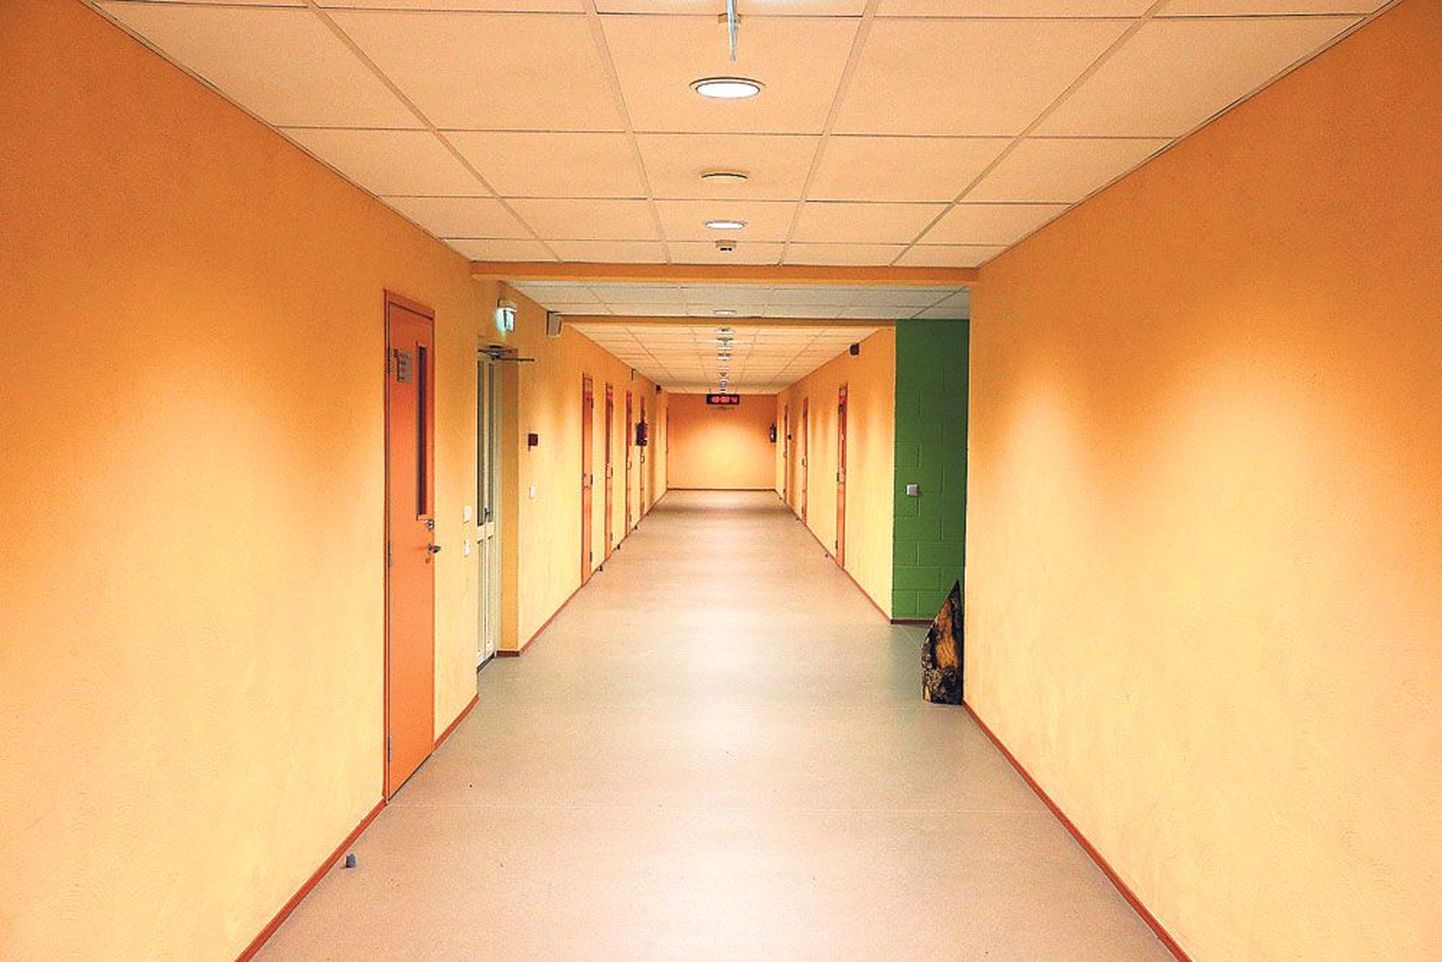 Halva siseõhuga Lähte ühisgümnaasiumi algklasside majas lasi vald välja vahetada jalutuskoridori põrandakatte.